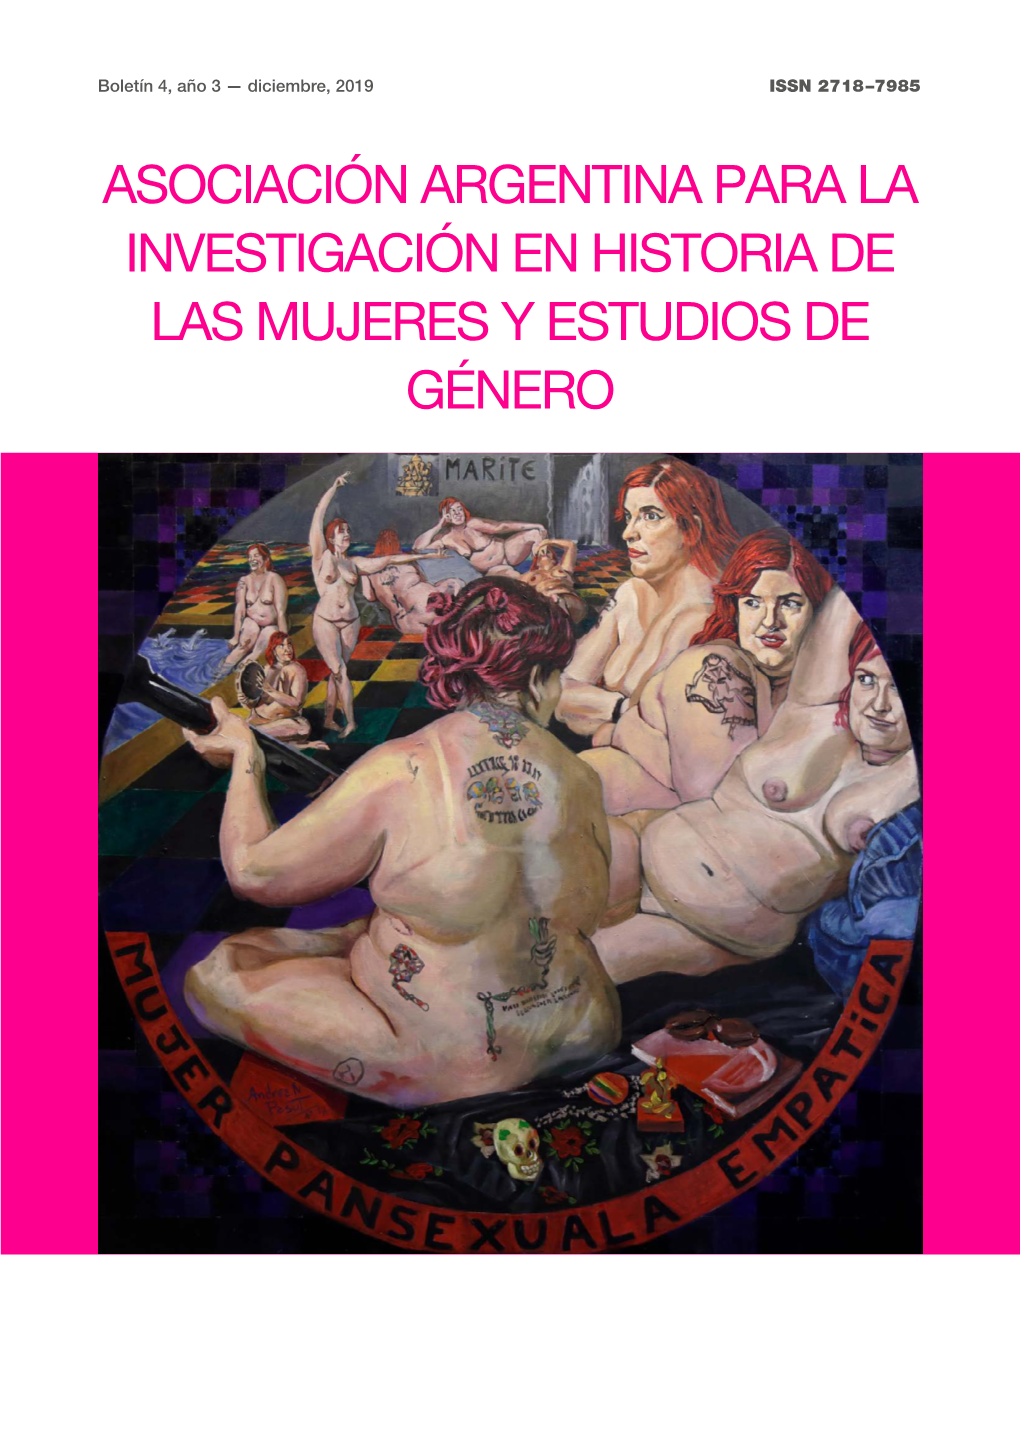 ASOCIACIÓN ARGENTINA PARA LA INVESTIGACIÓN EN HISTORIA DE LAS MUJERES Y ESTUDIOS DE GÉNERO Boletín 4, Año 3 Diciembre, 2019